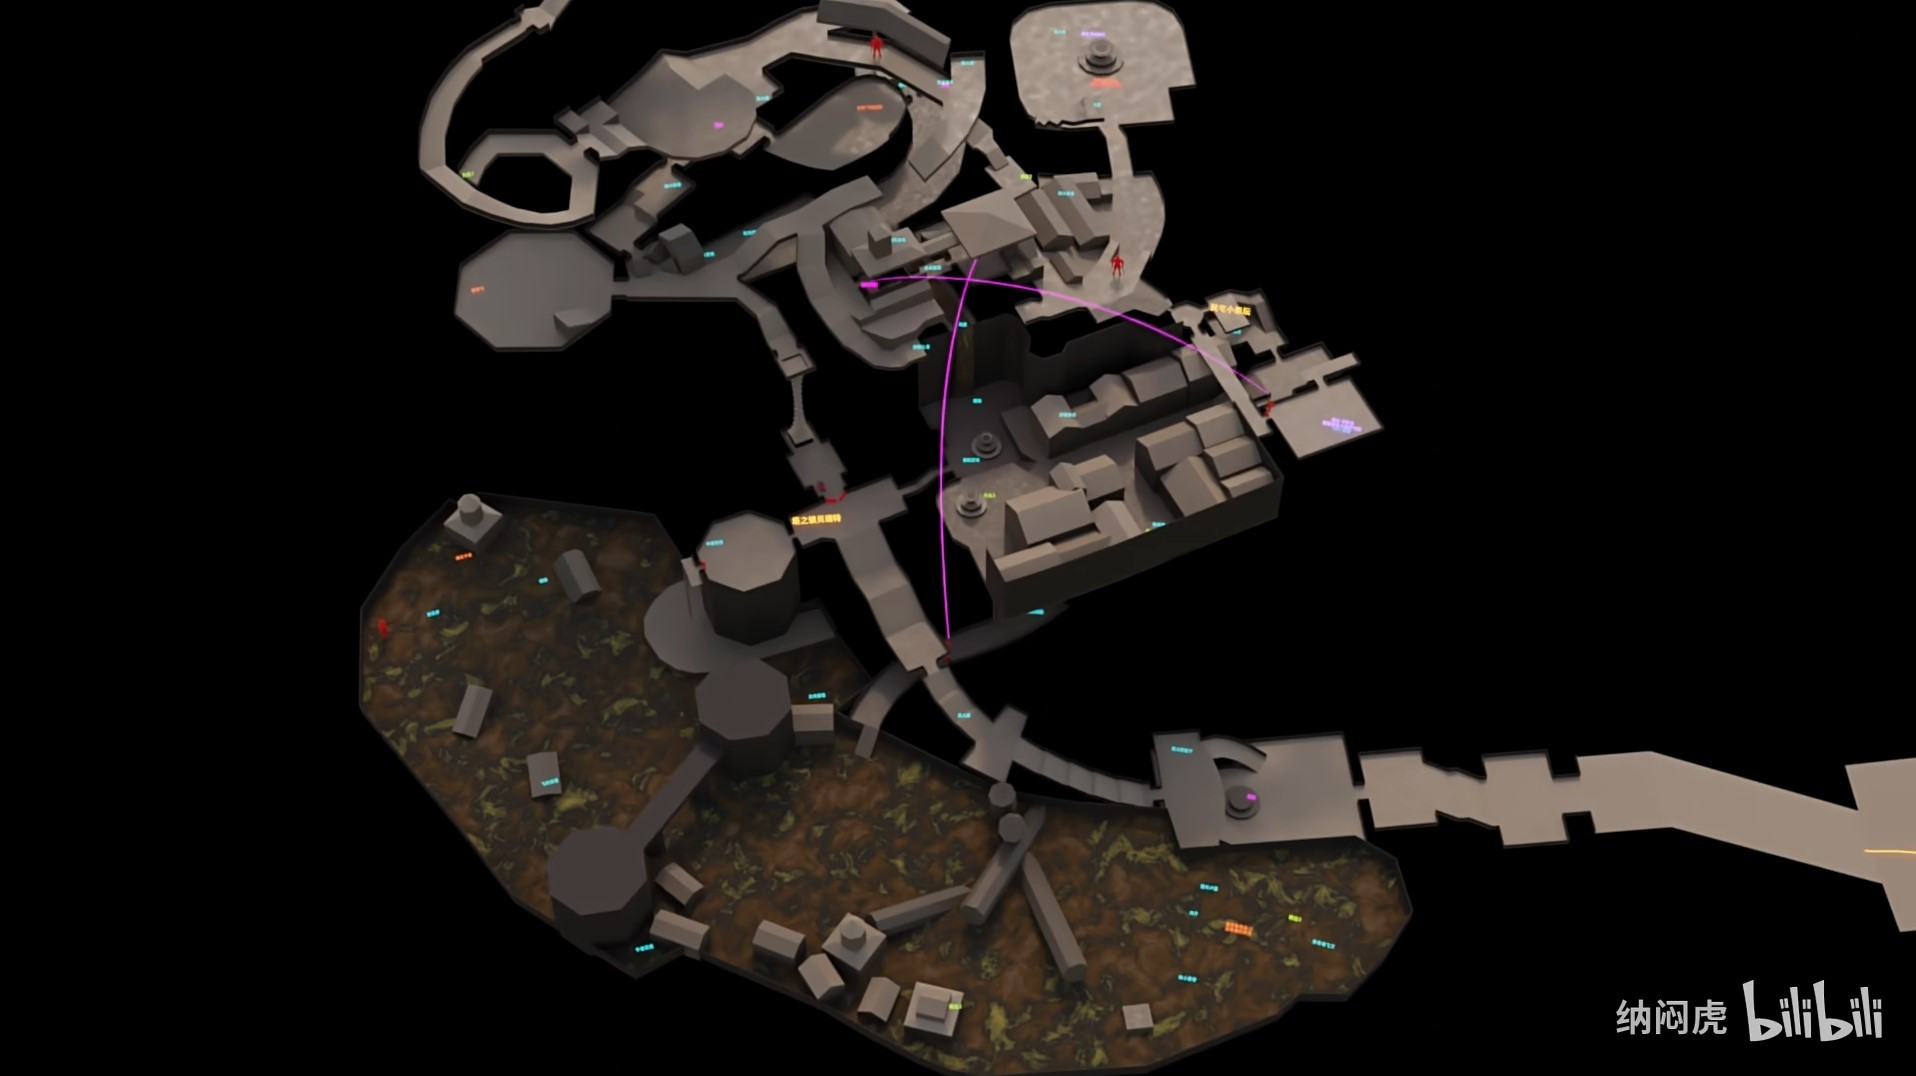 《艾爾登法環》黃金樹之影DLC塔之鎮貝瑞特3D地圖路線導航 塔之鎮貝瑞特3D地圖分享